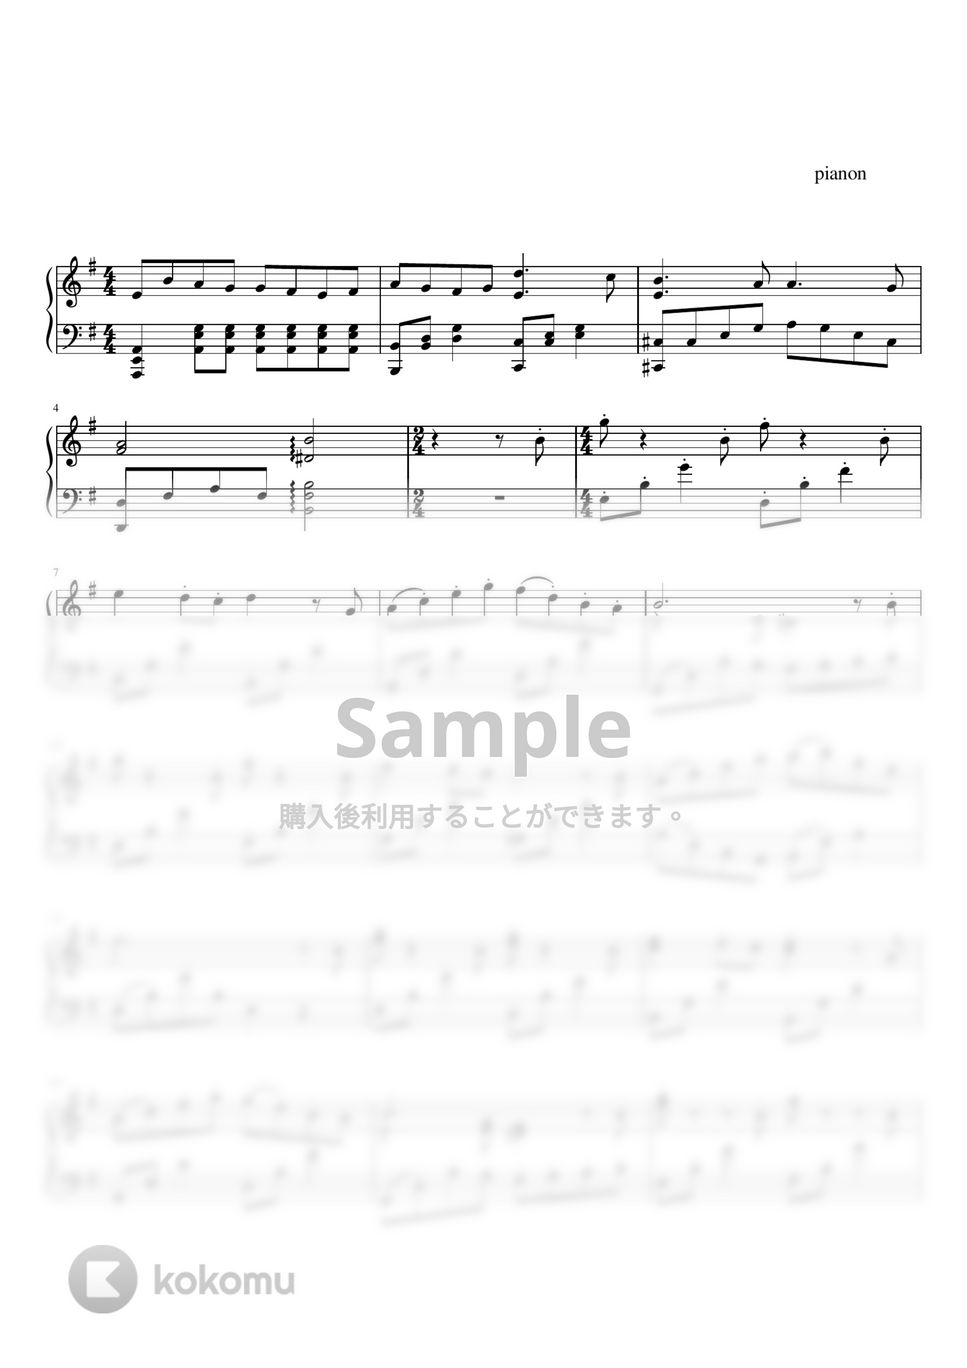 久石譲 - 海の見える街 (ピアノ上級ソロ) by pianon